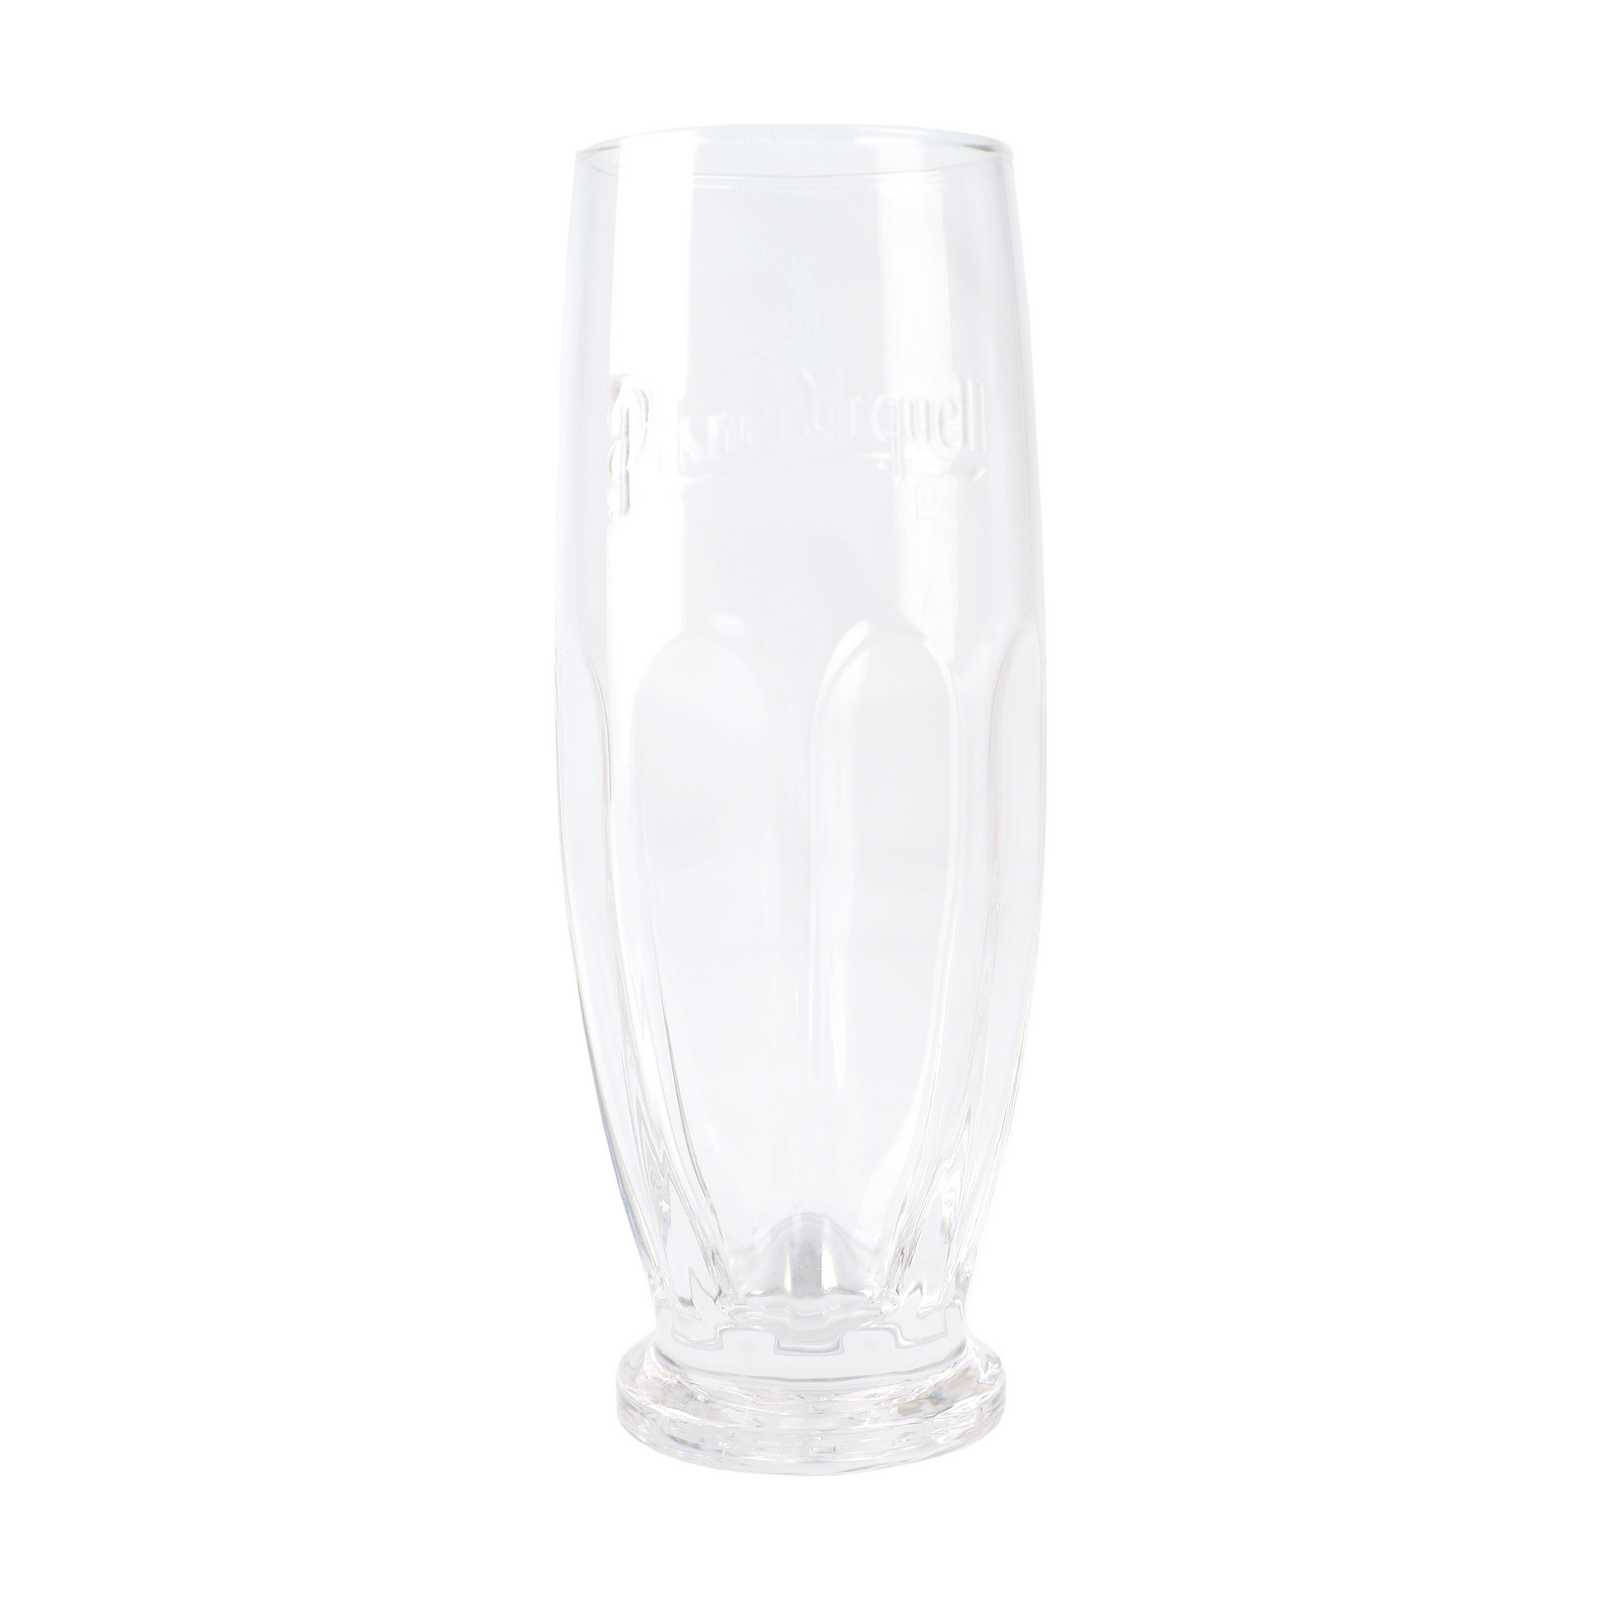 Pilsner Urquell Original 0.3 l glass